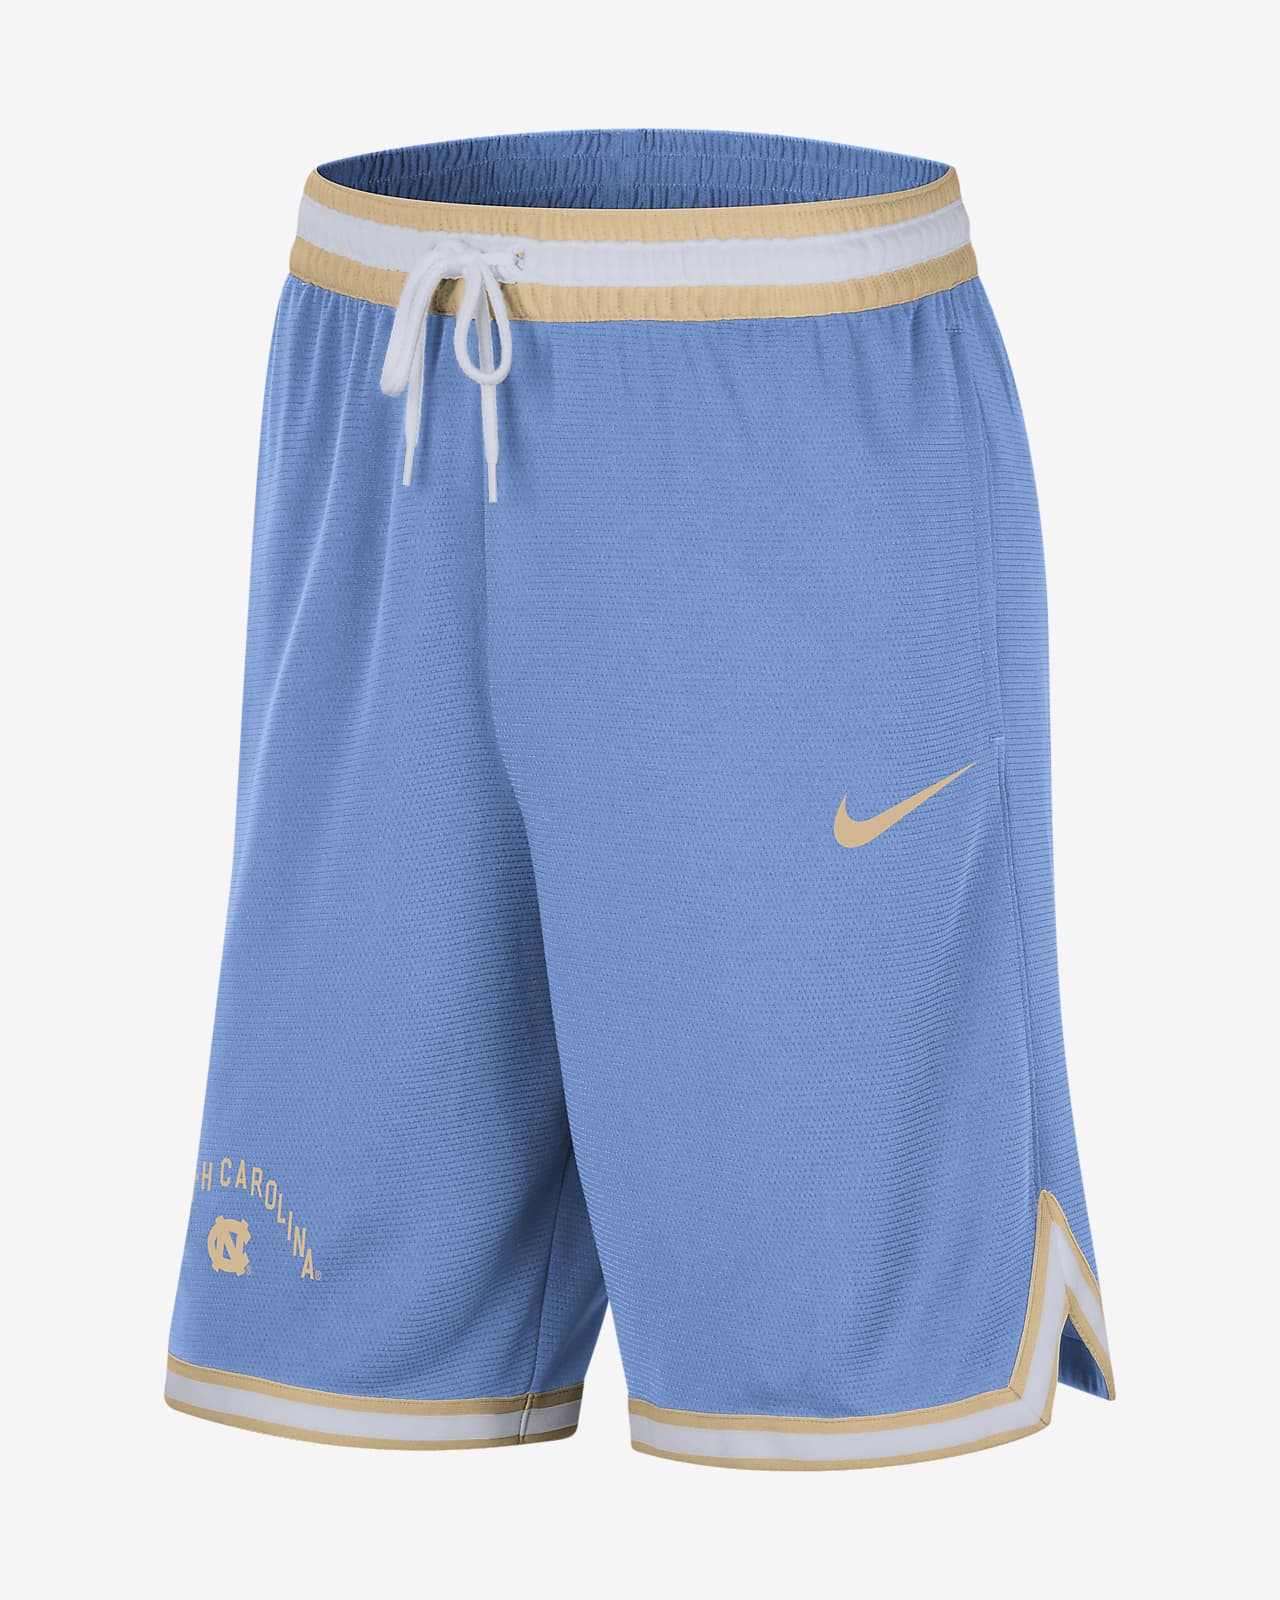 Shorts universitarios Nike Dri-FIT para hombre UNC DNA 3.0